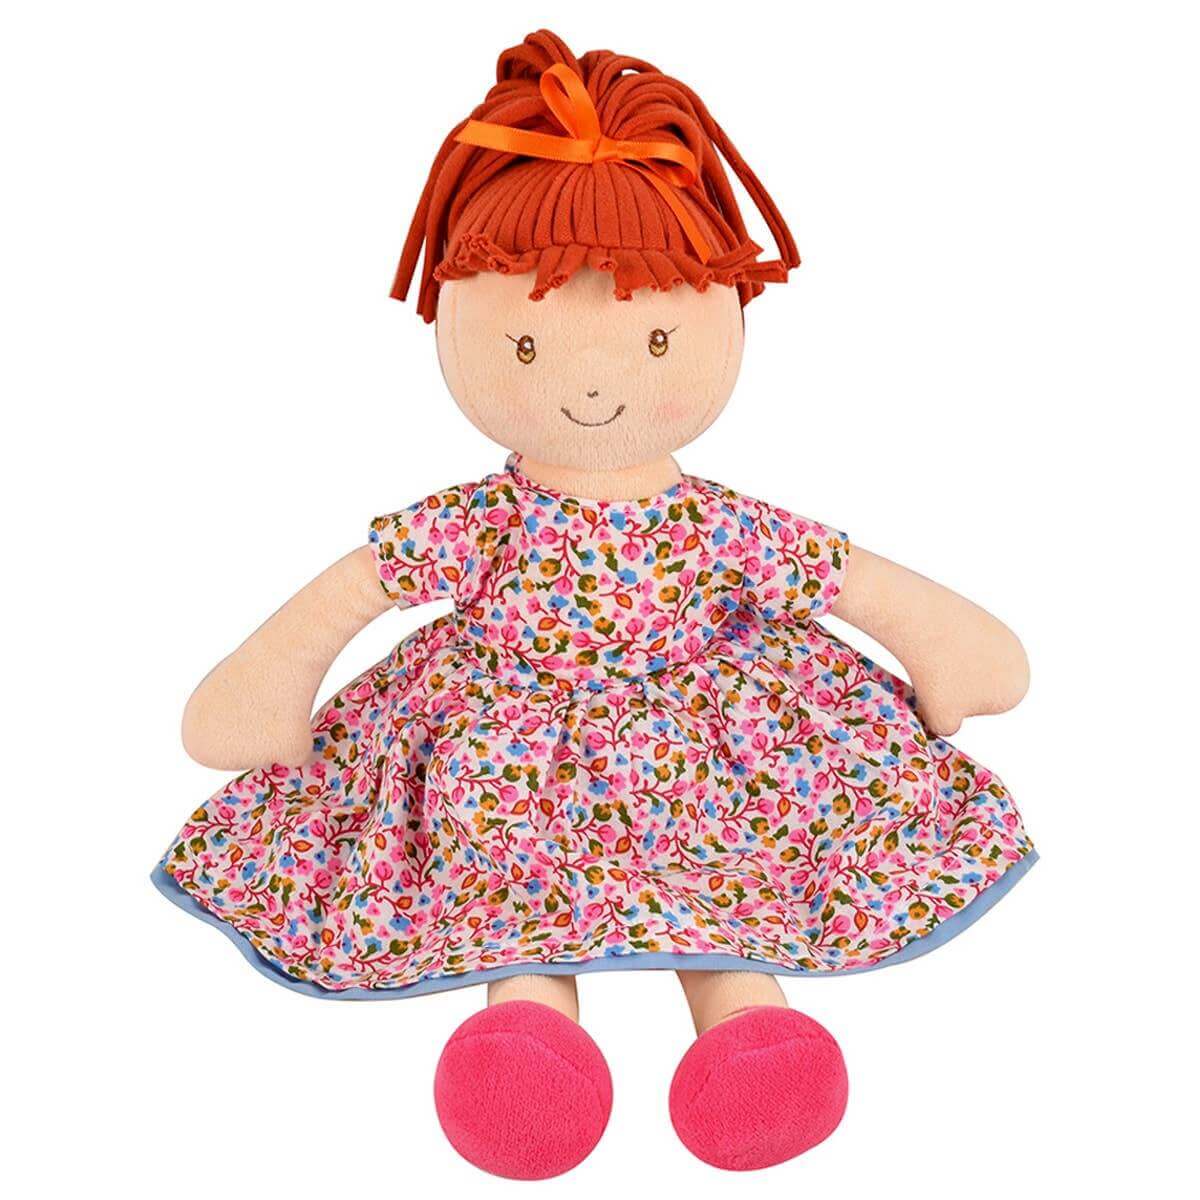 Emmy Lu - Orange Hair with Pink Print Dress, Tikiri Toys, eco-friendly Toys, Mountain Kids Toys